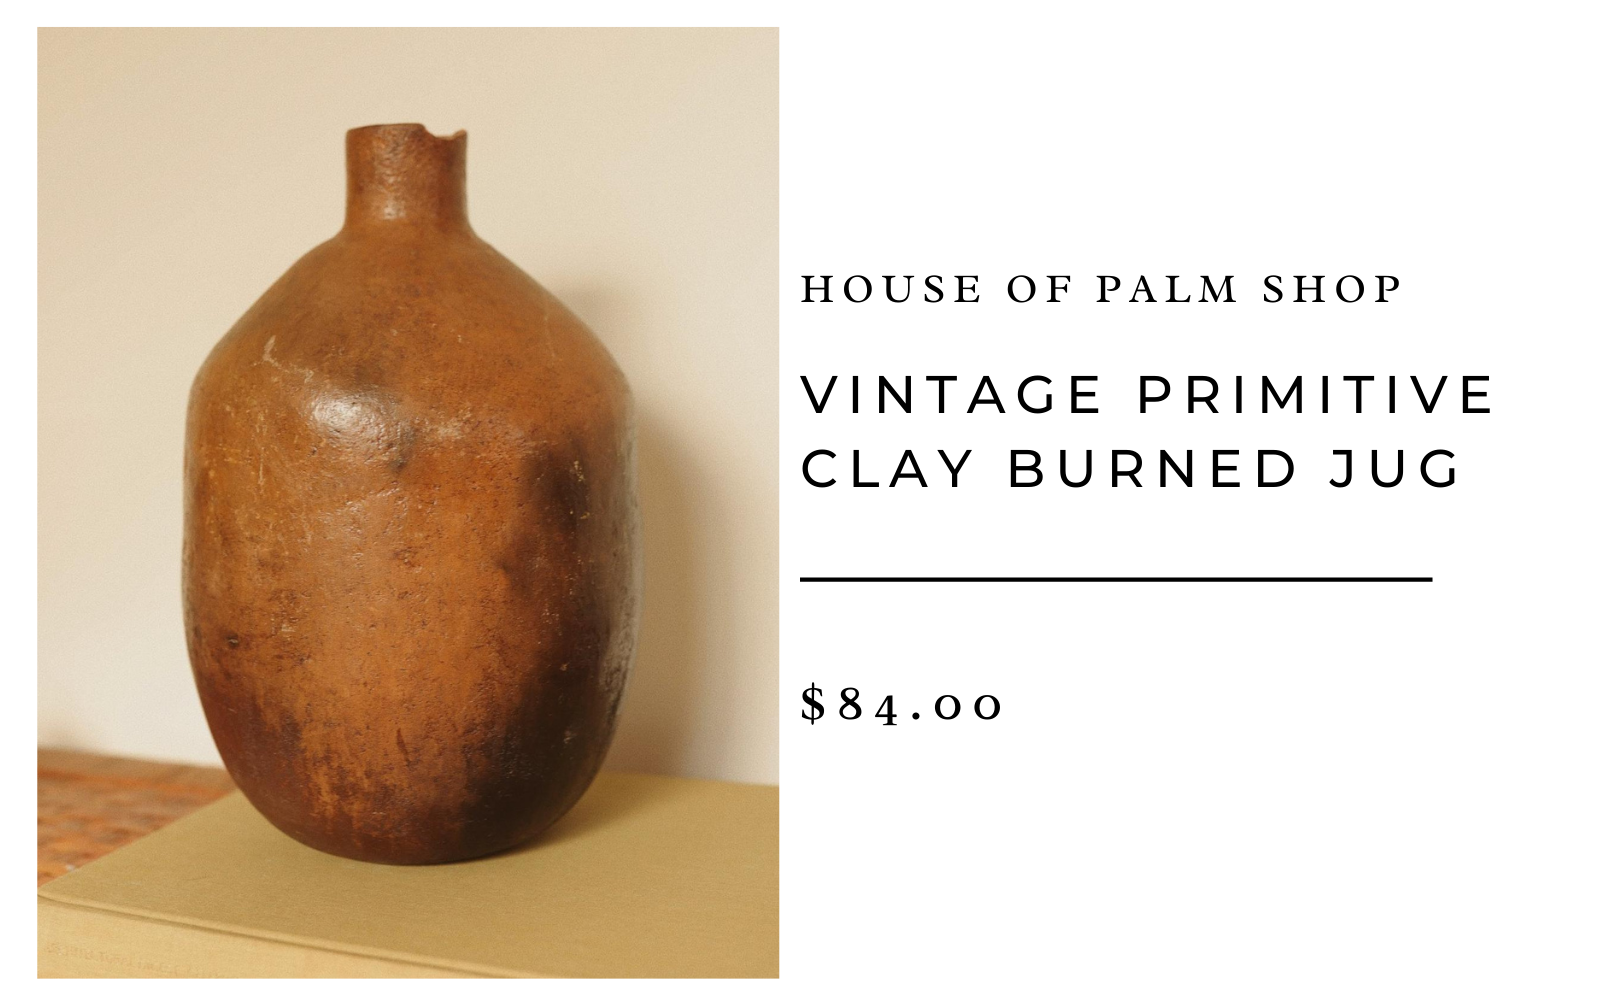 House of Palm Shop Vintage Primitive Clay Burned Jug